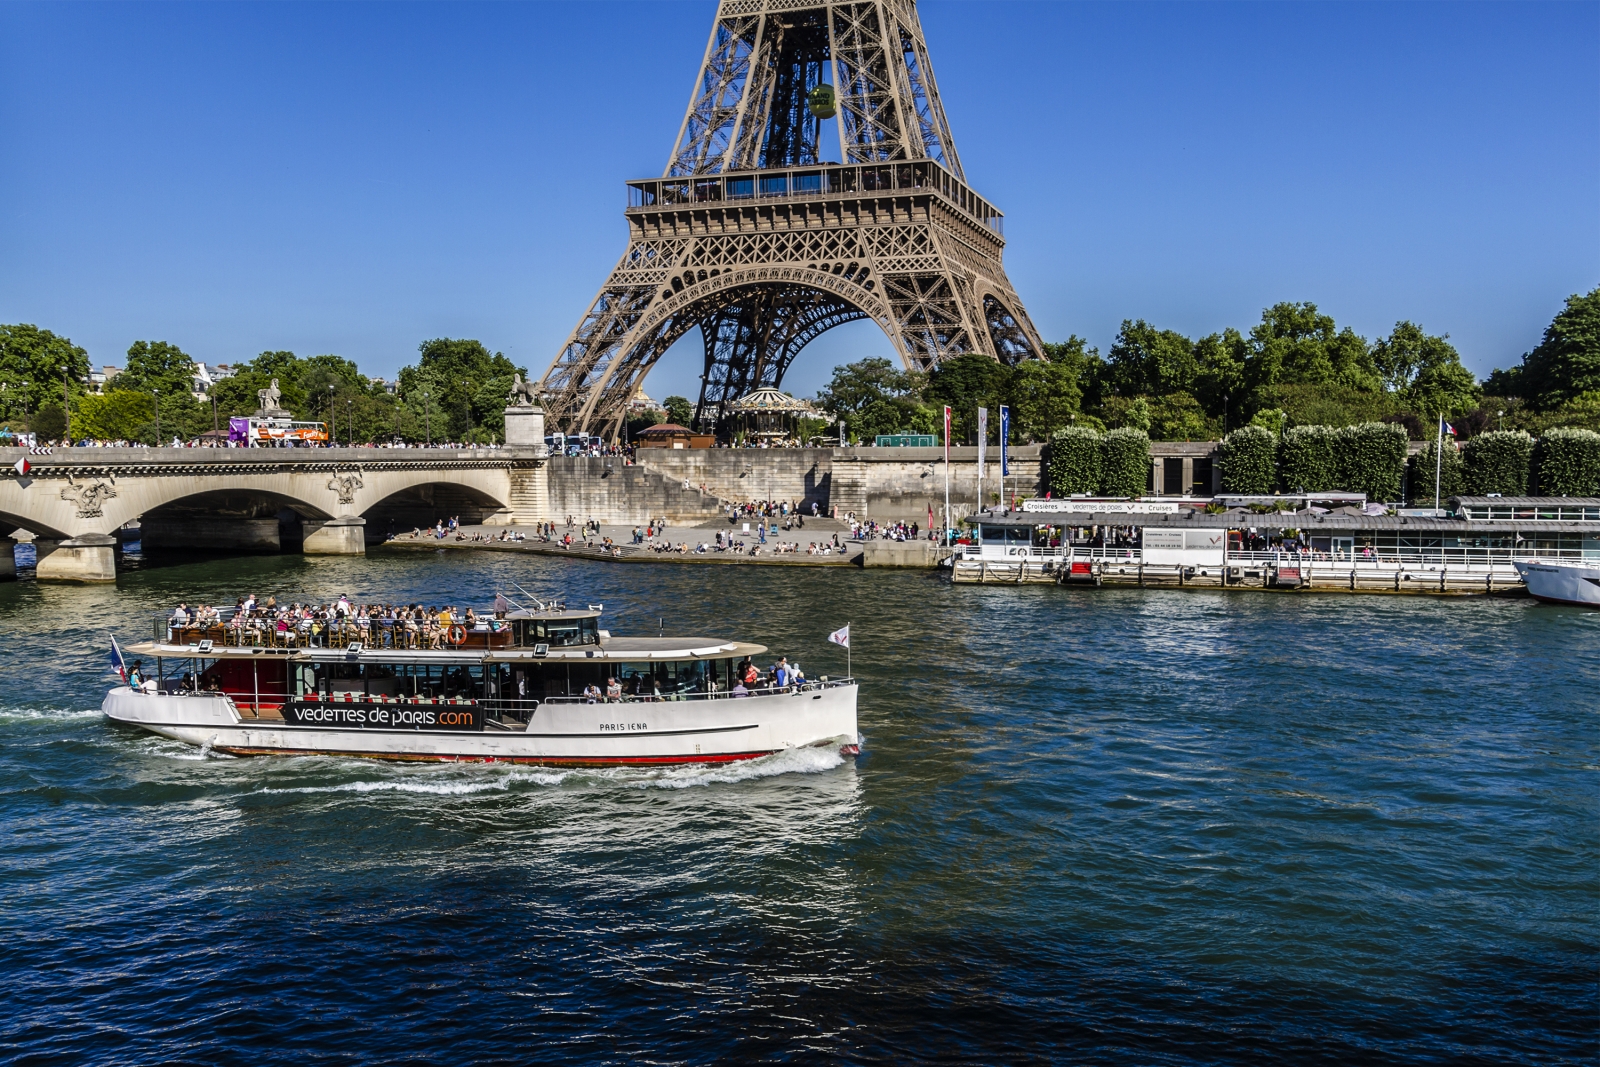 Сена на французском. Река сена в Париже. Река сена во Франции. Достопримечательности Франции. Река сена. Сена (река) реки Франции.